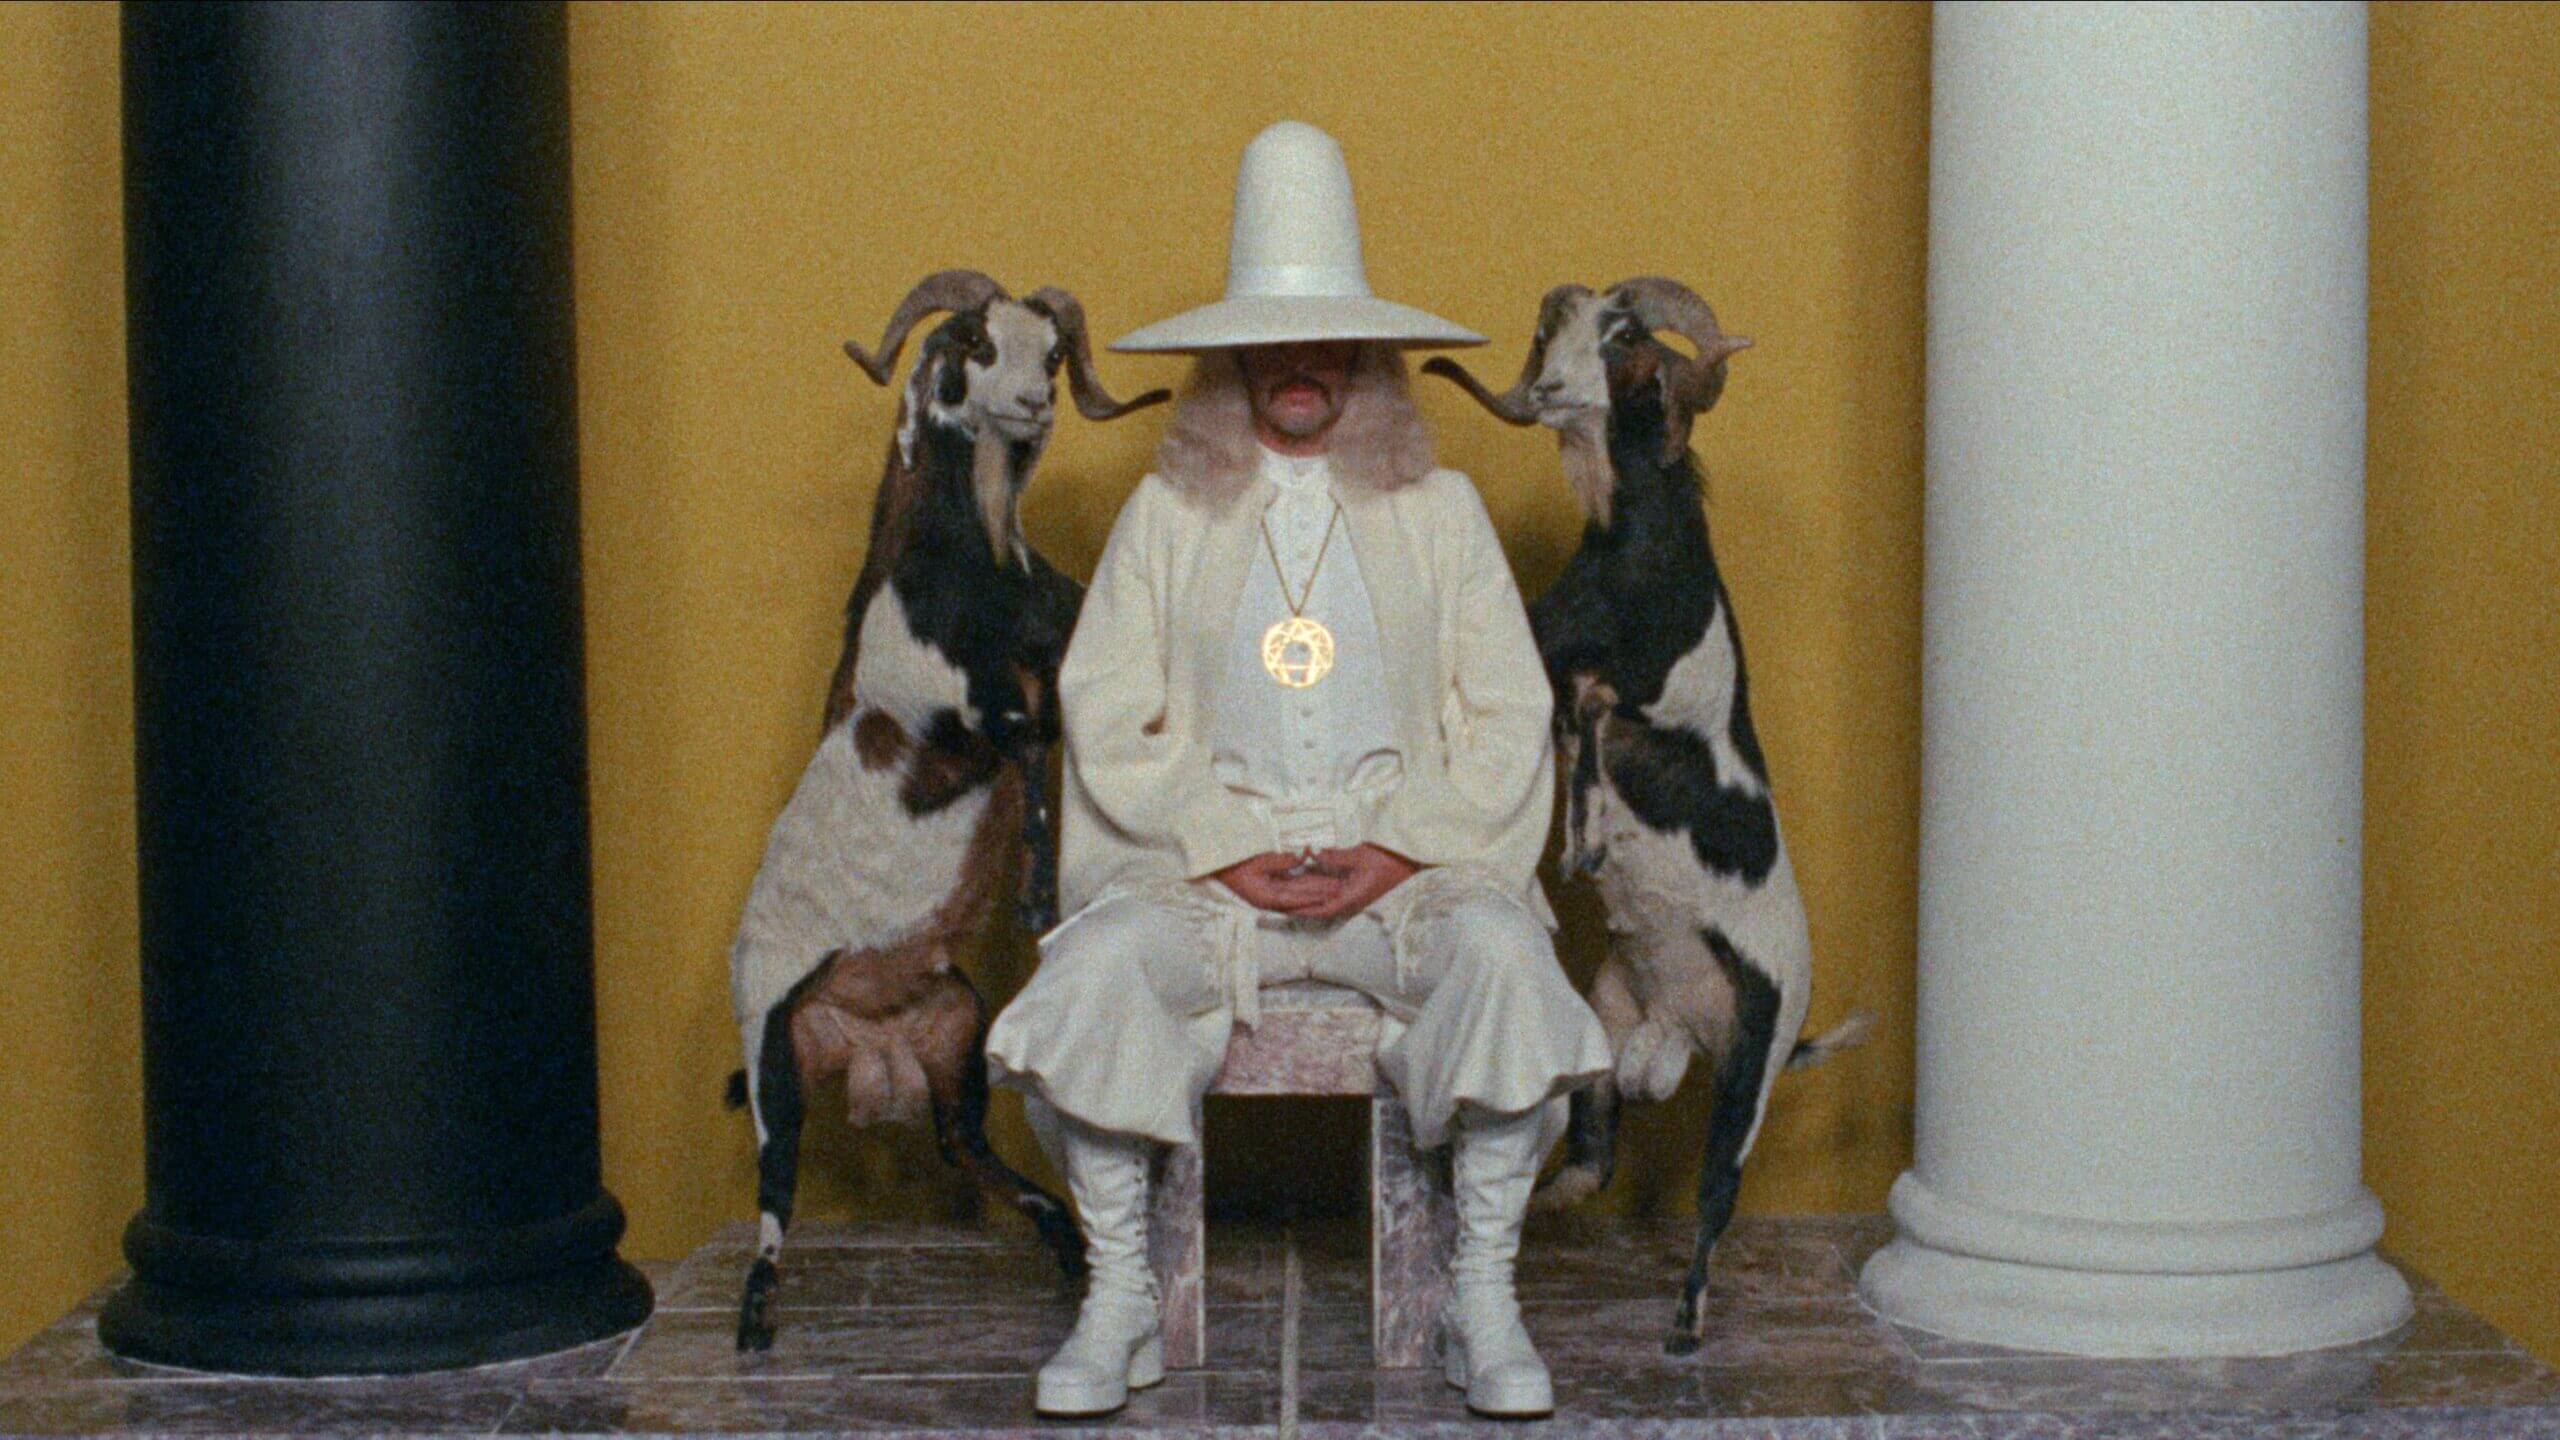 Un homme chapeauté trône entre deux chèvres dans une scène du film La montagne sacrée